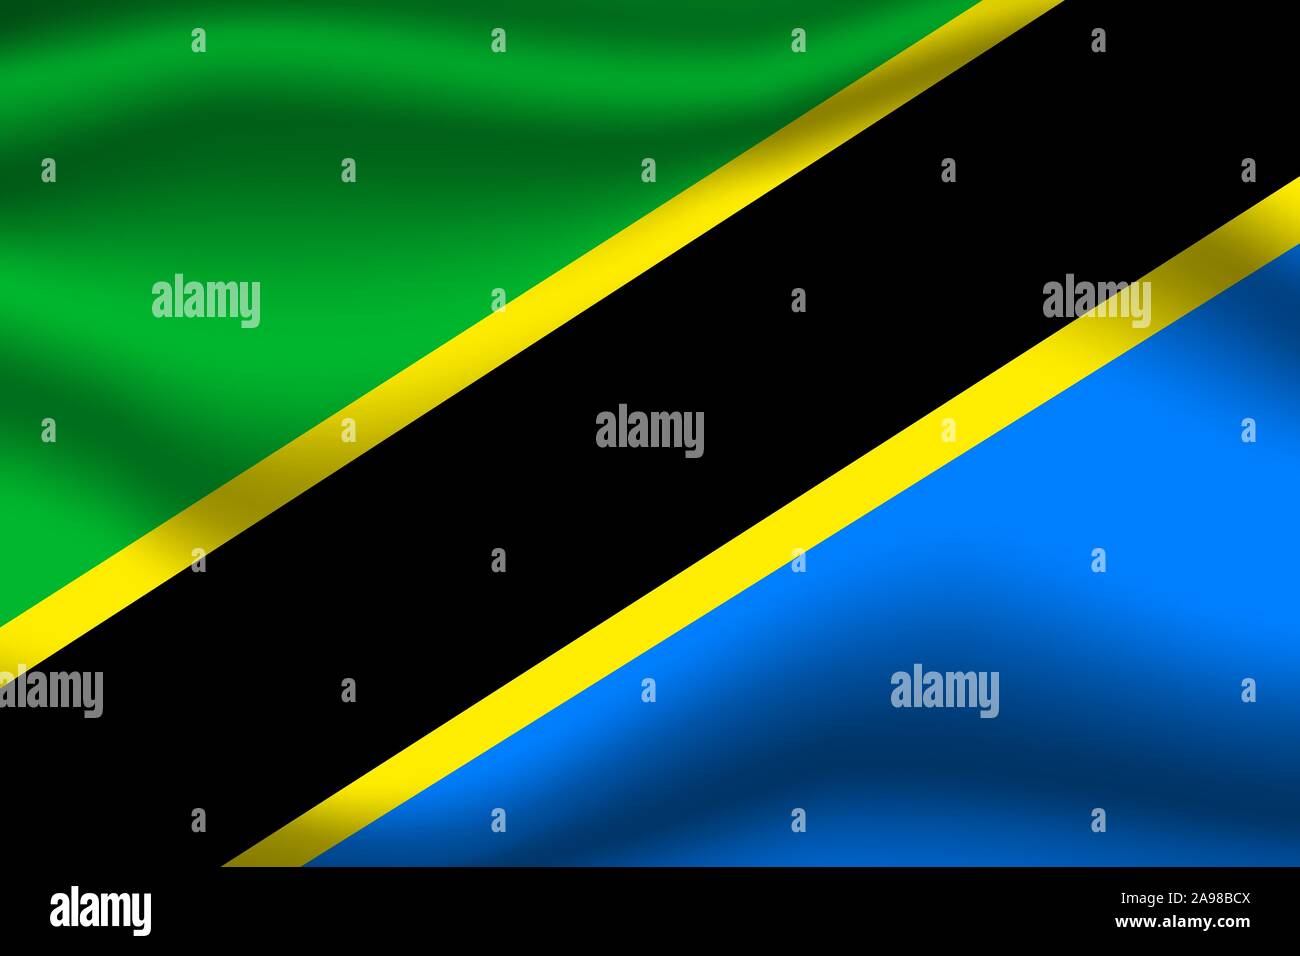 Wunderschöne Nationalflagge der Vereinigten Republik Tansania, die ursprünglichen Farben und Proportionen. Einfach Vektor eps Abbildung 10, aus Ländern Flag gesetzt. Stock Vektor